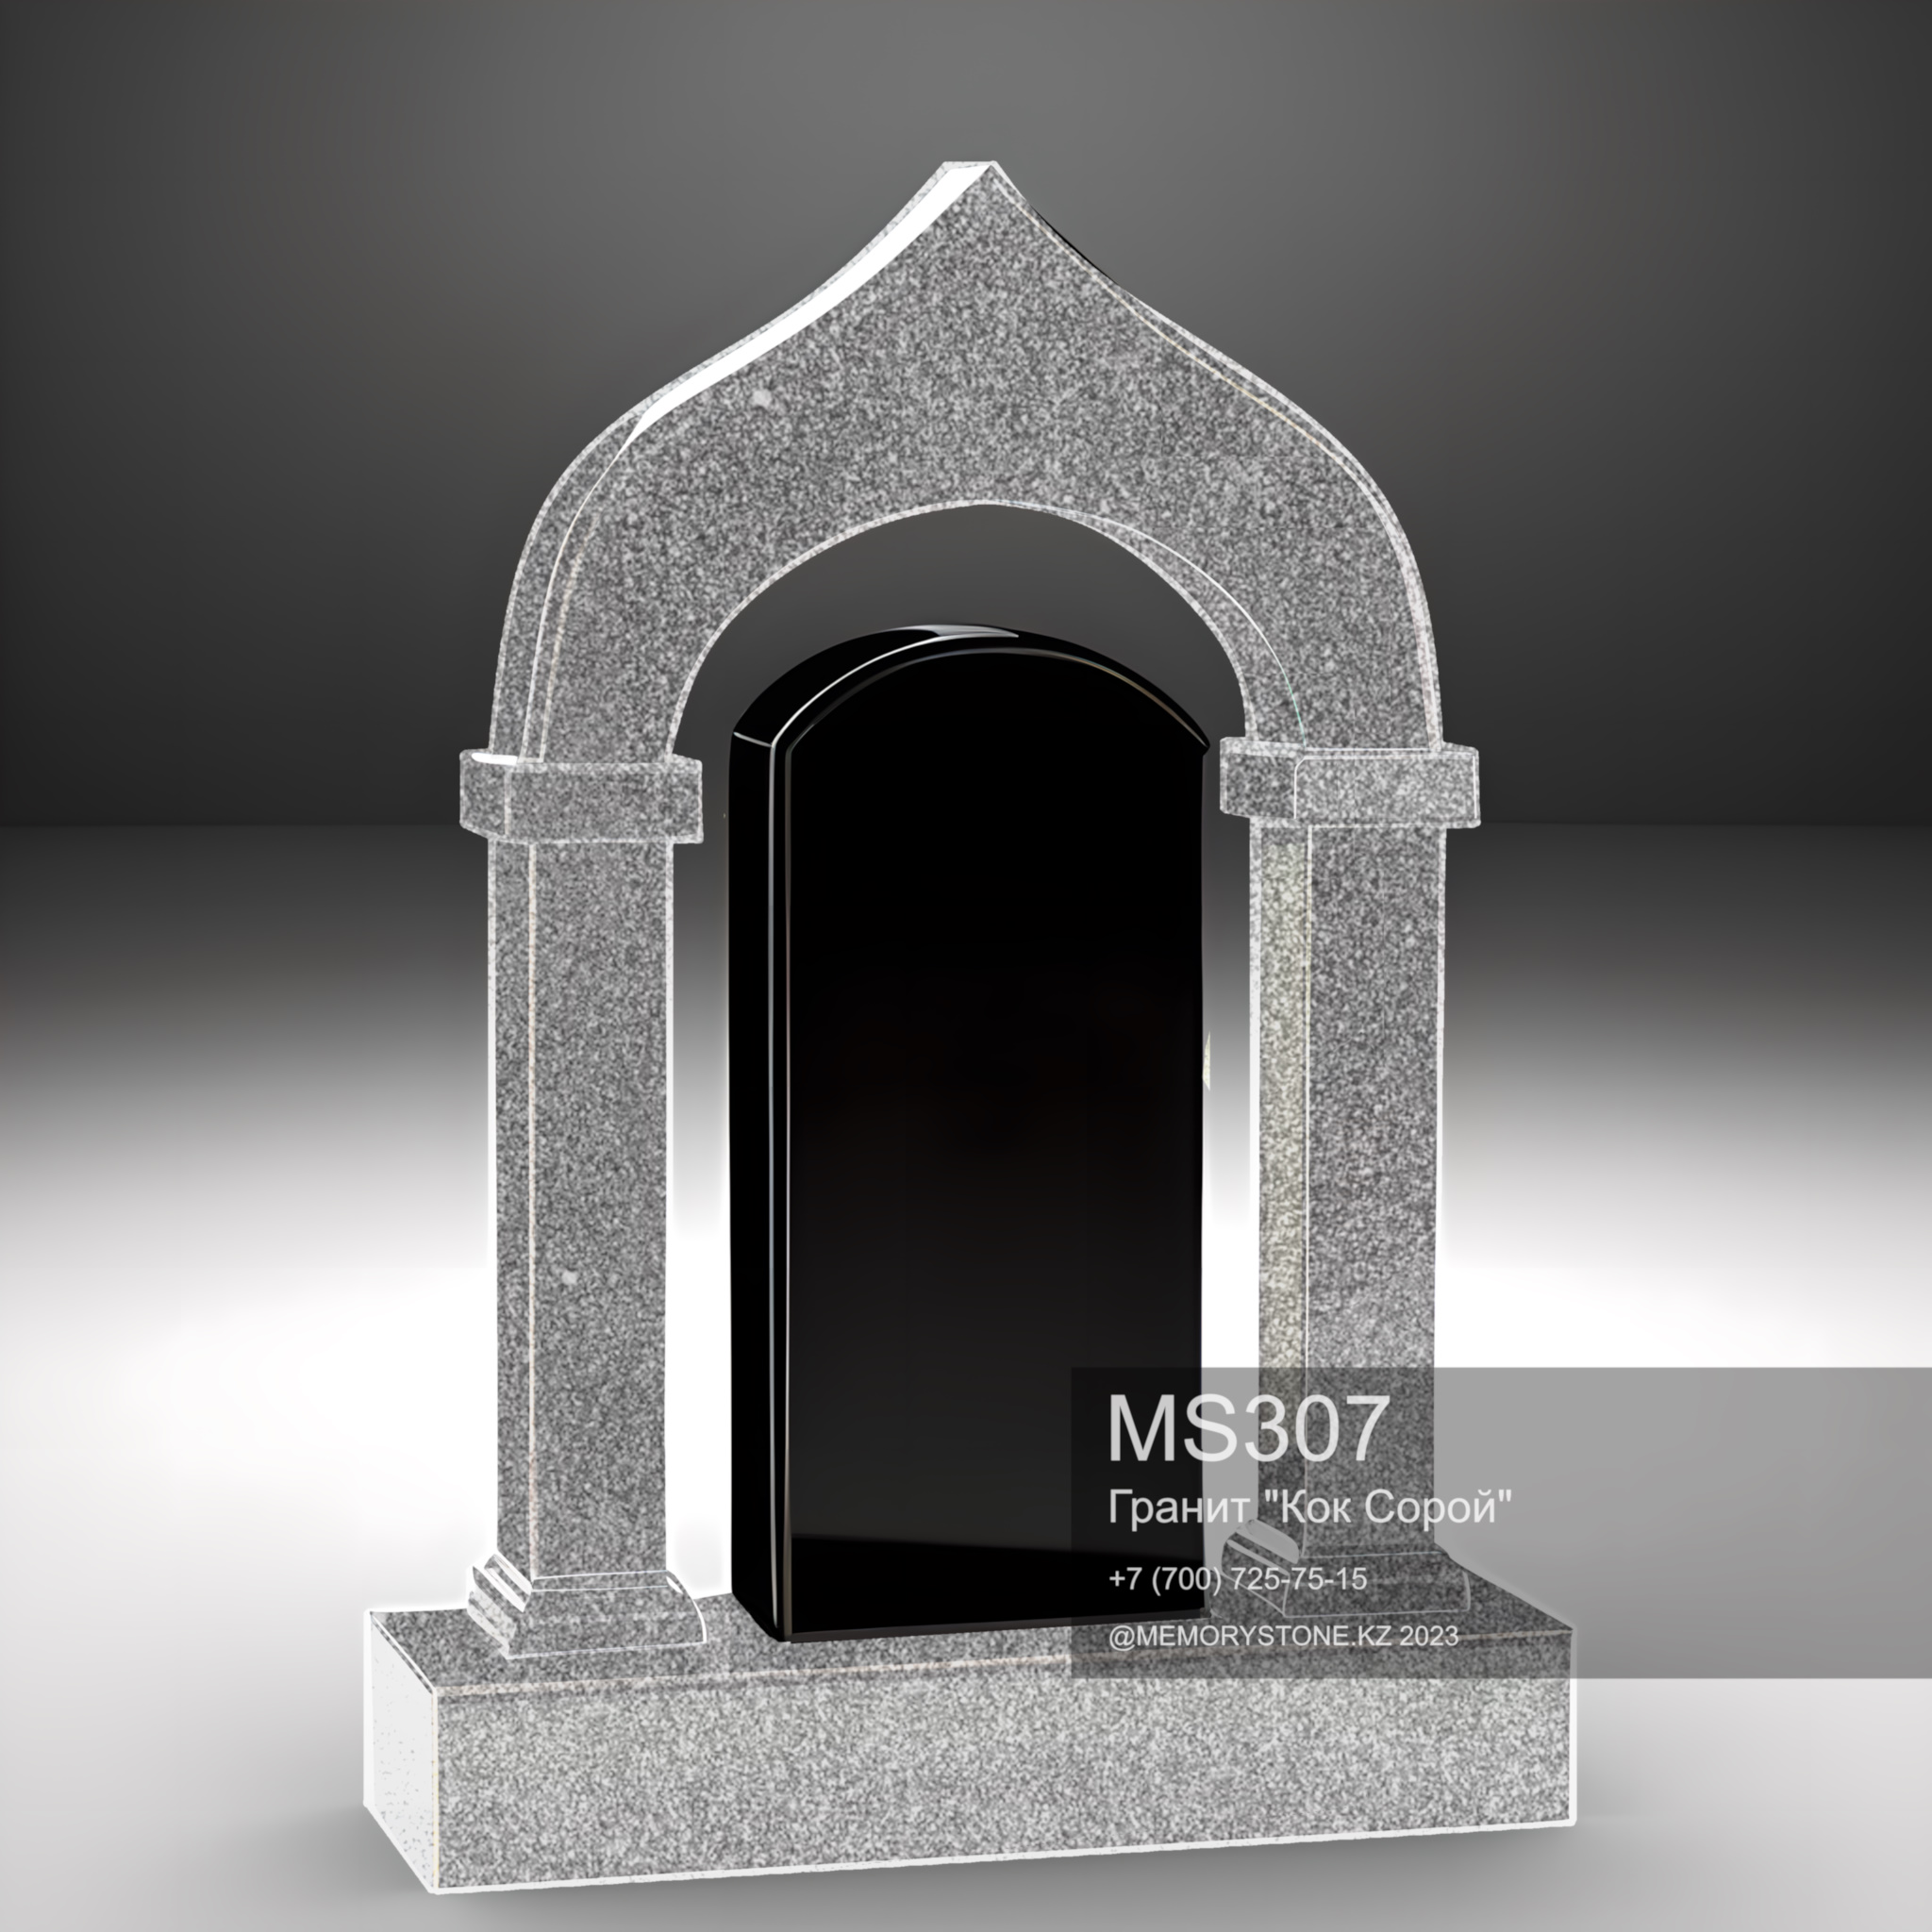 Комбинированный памятник с аркой из серого гранита и стелой из черного габбро. Возможно добавить мусульманскую атрибутику